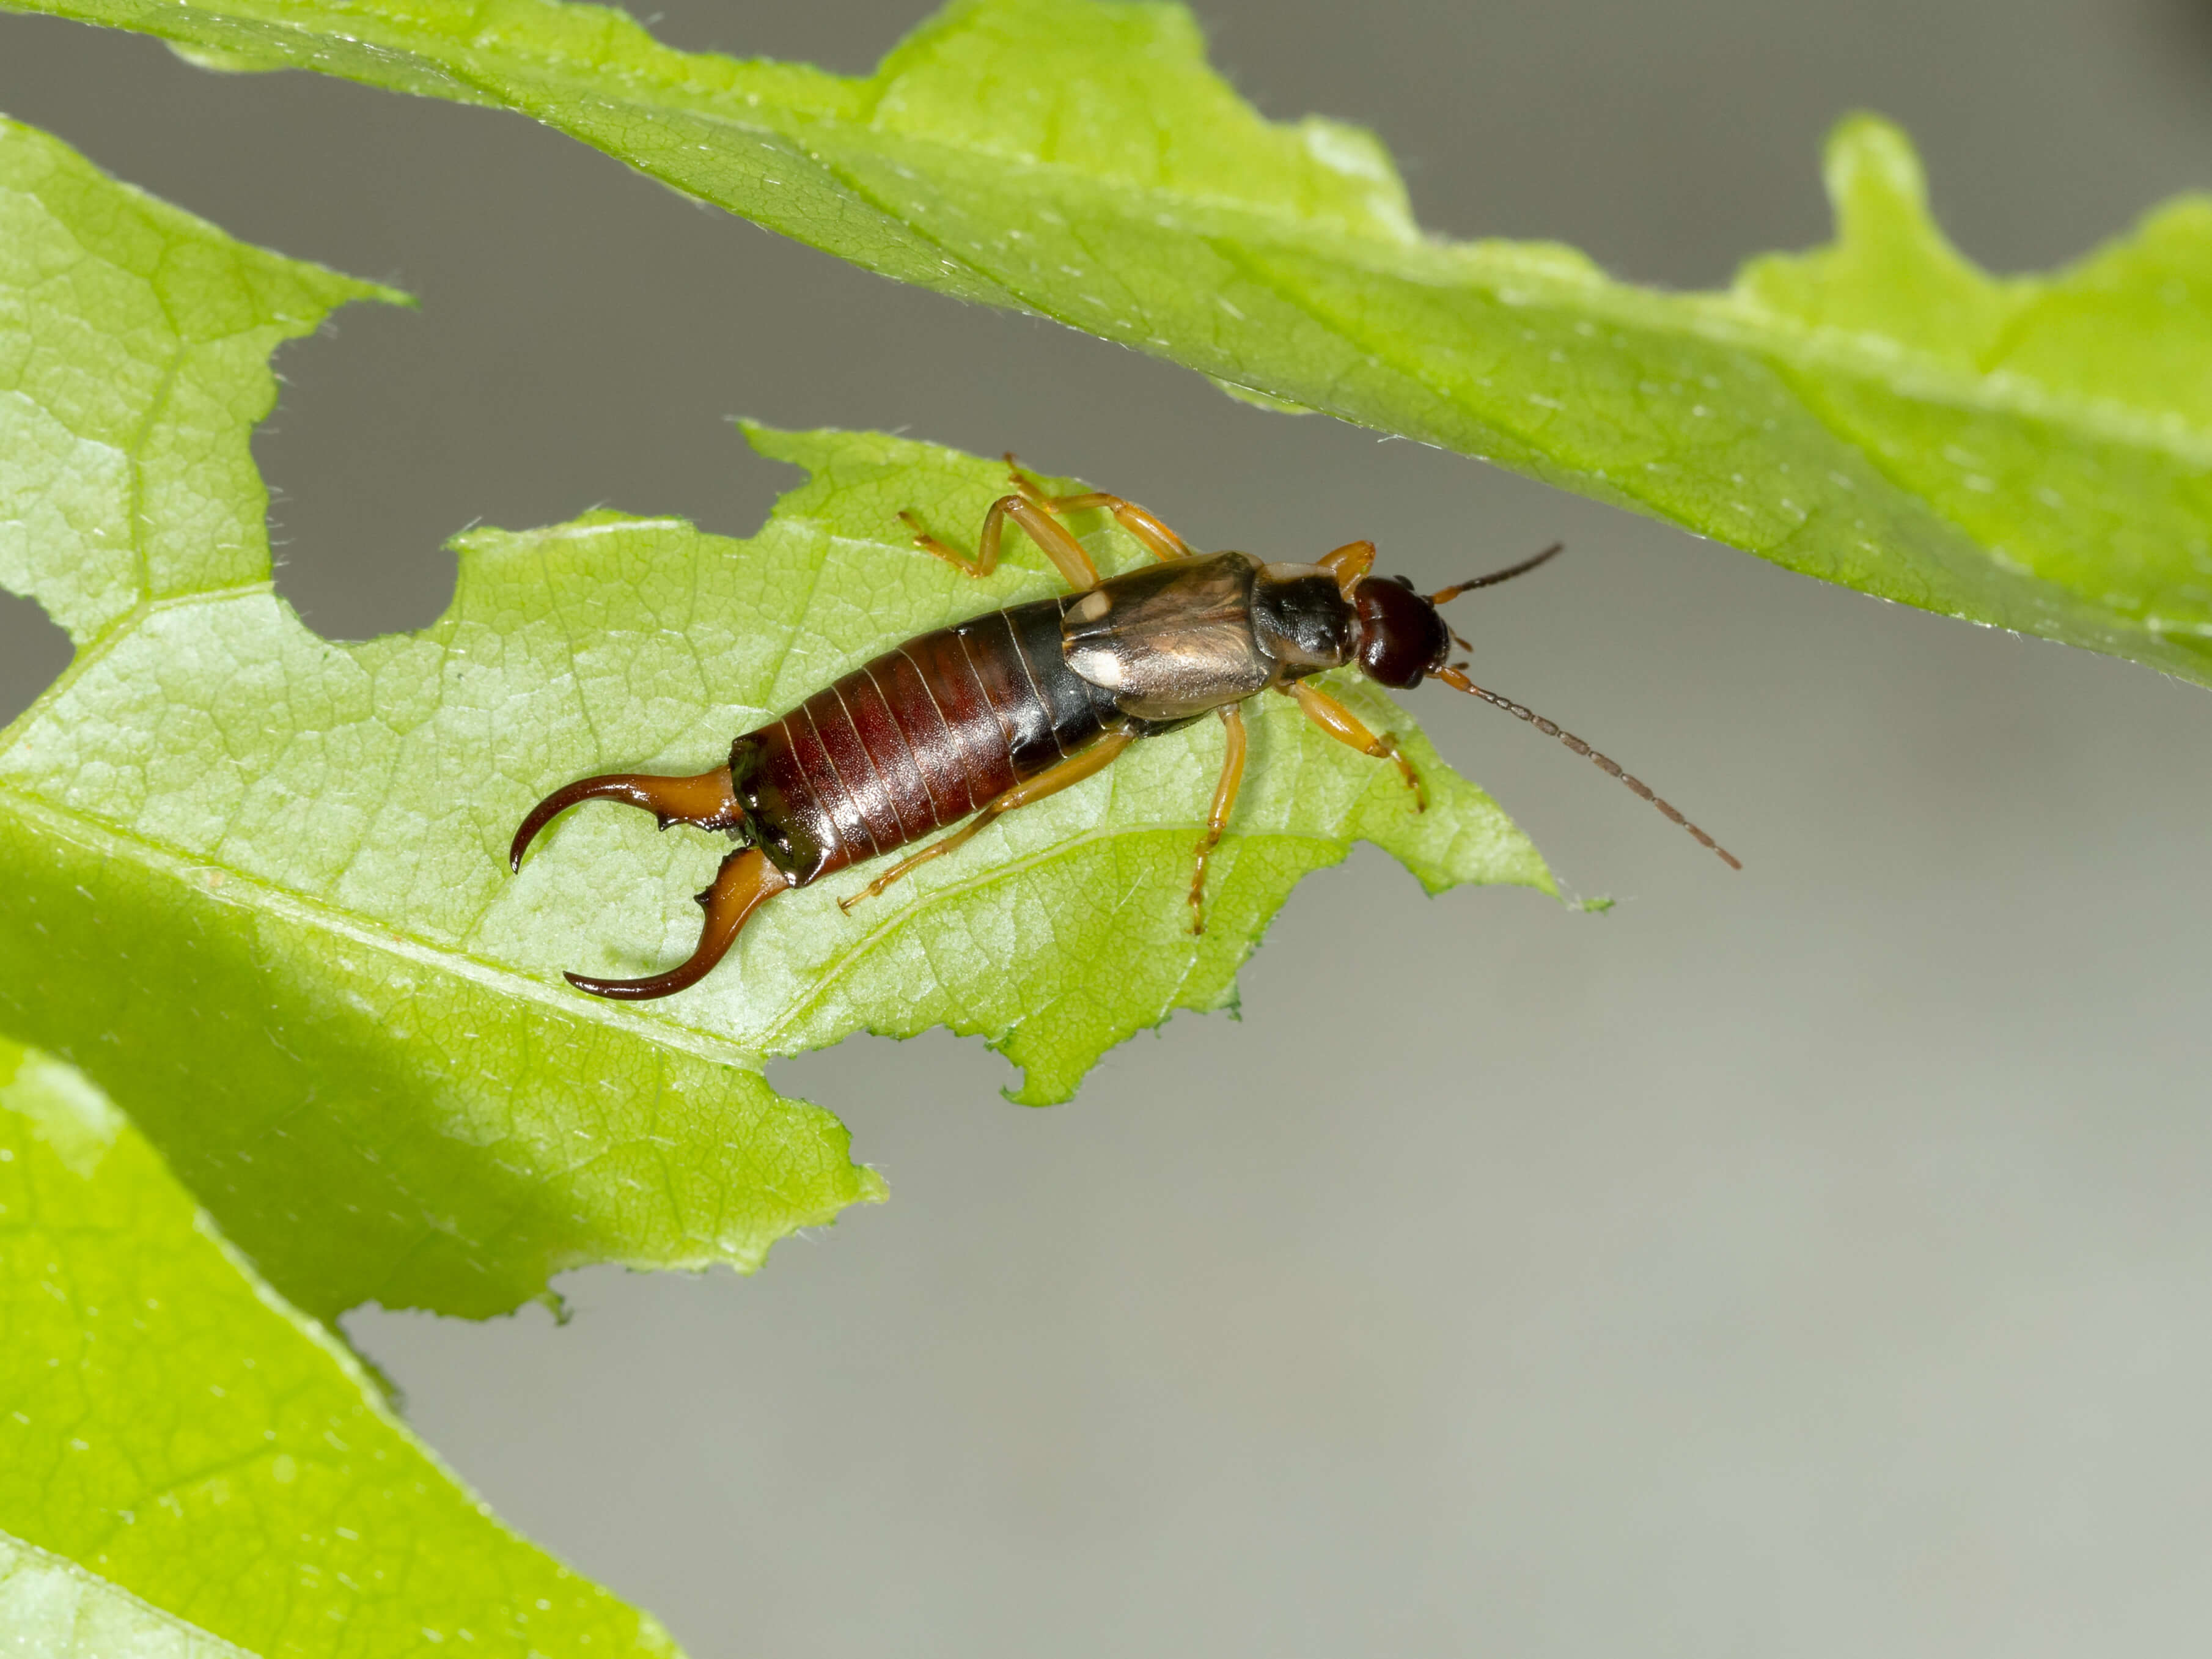 Pincher bug (earwig) on a half-eaten plant leaf.